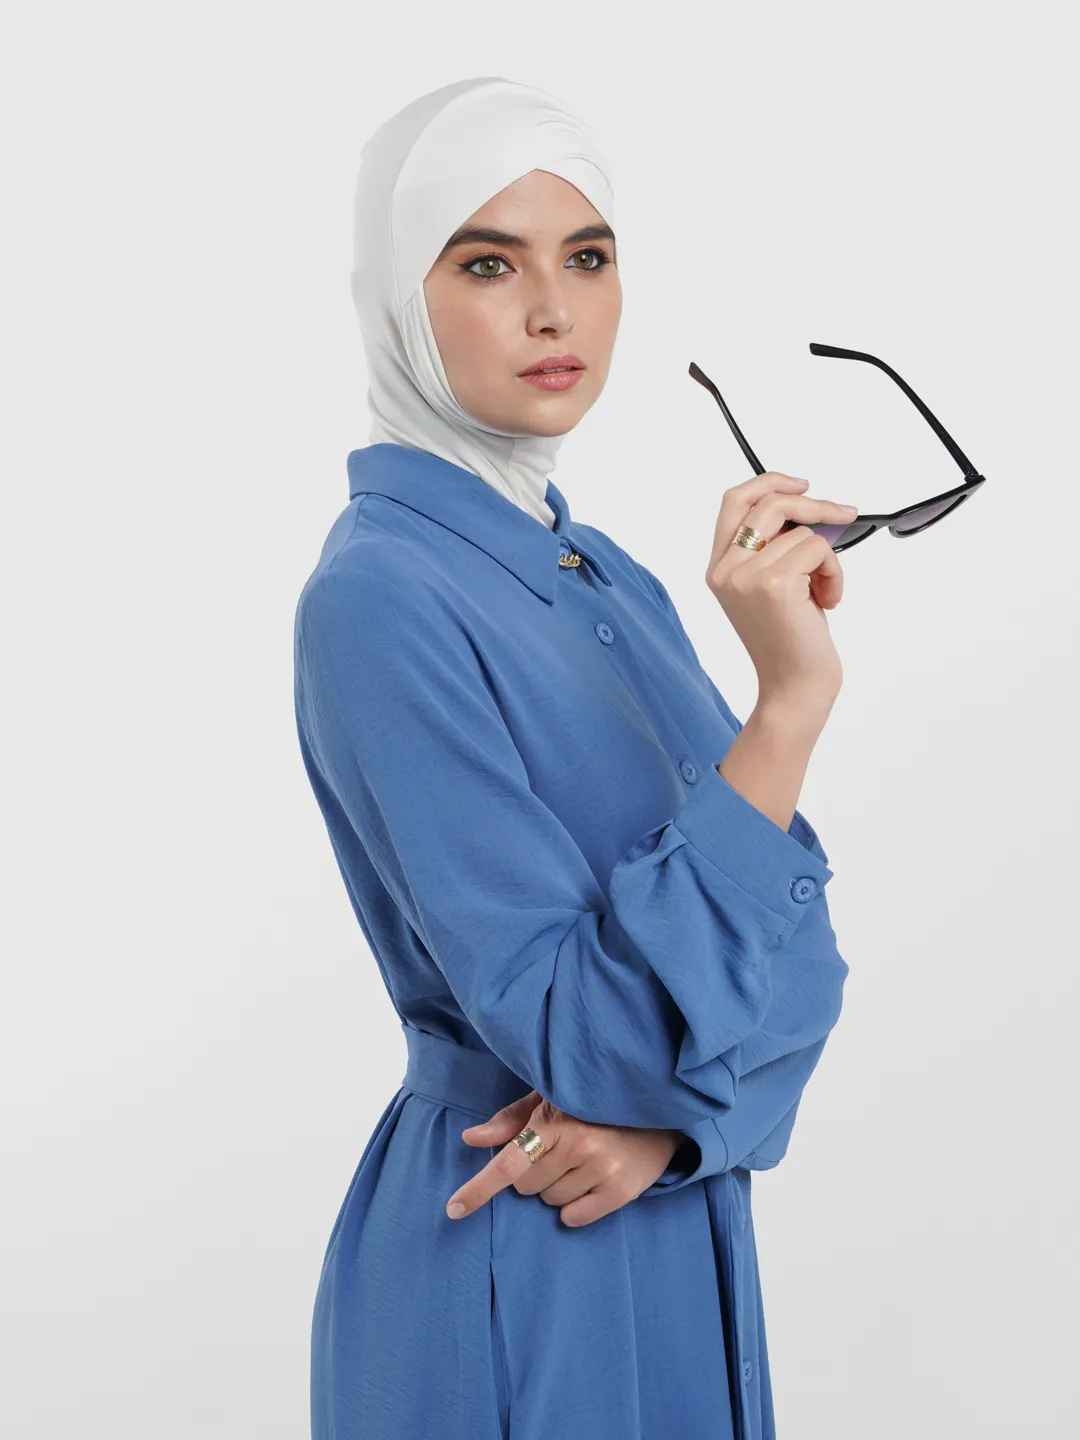 Мусульманский спортивный. Костюм мусульманки. Мусульманские костюмы для женщин. Медицинская одежда для мусульманок. Мусульманская спортивная одежда для женщин.